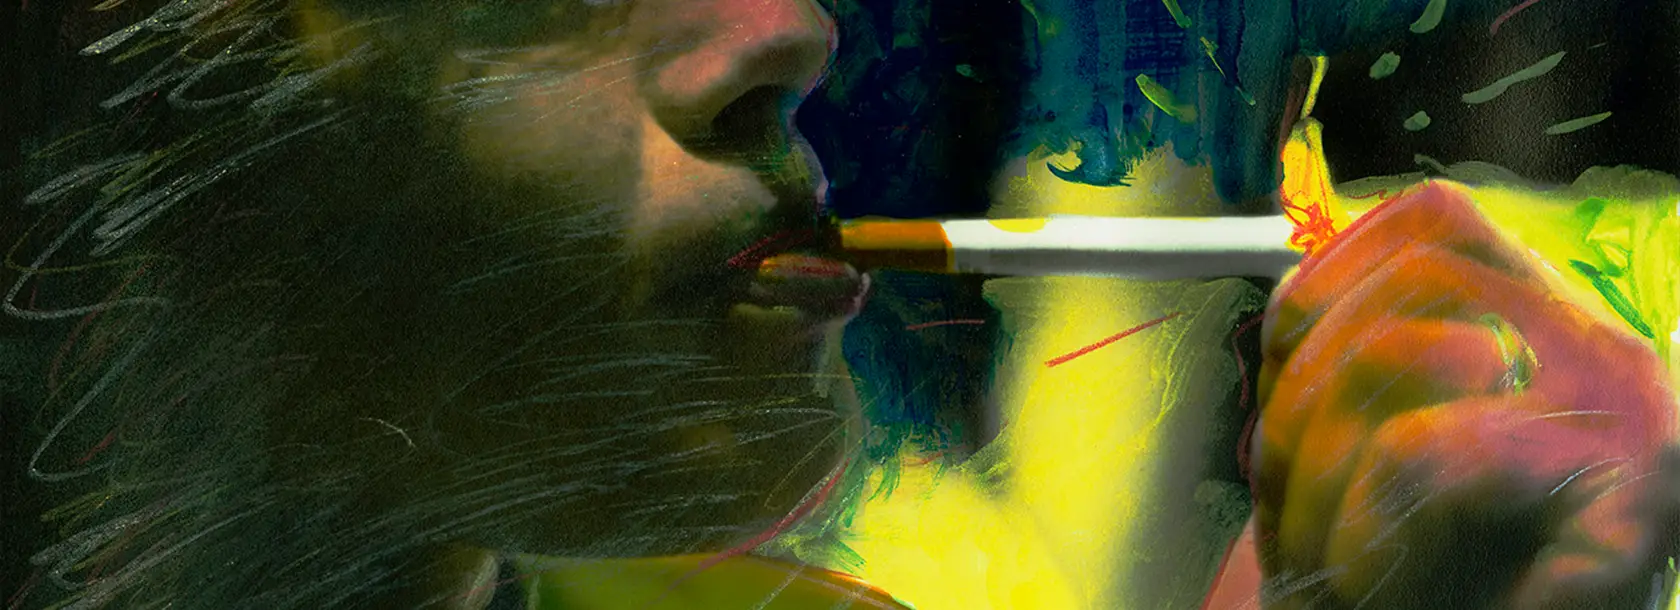 Fotografia a colori vividi di una persona che accende una sigaretta, scattata da Roberto Orlandi.